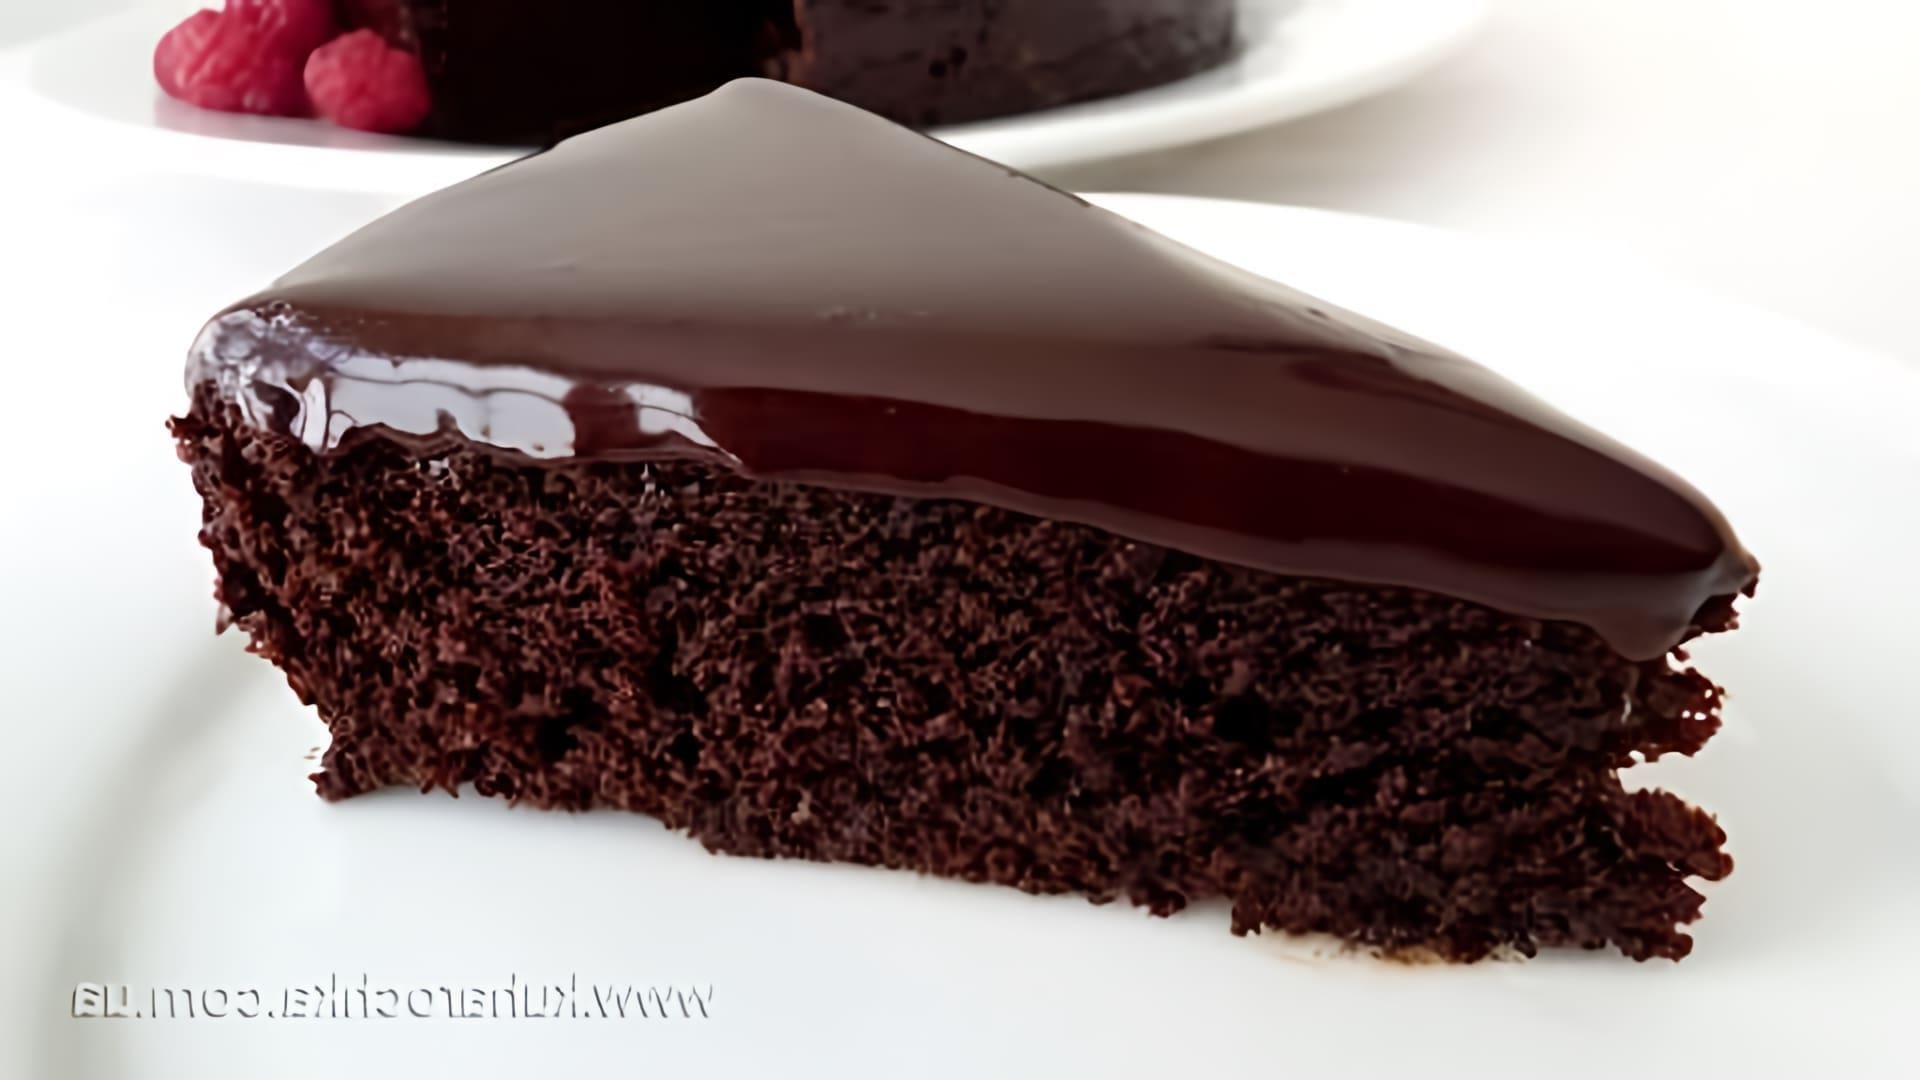 В этом видео демонстрируется процесс приготовления брауни - шоколадного кекса